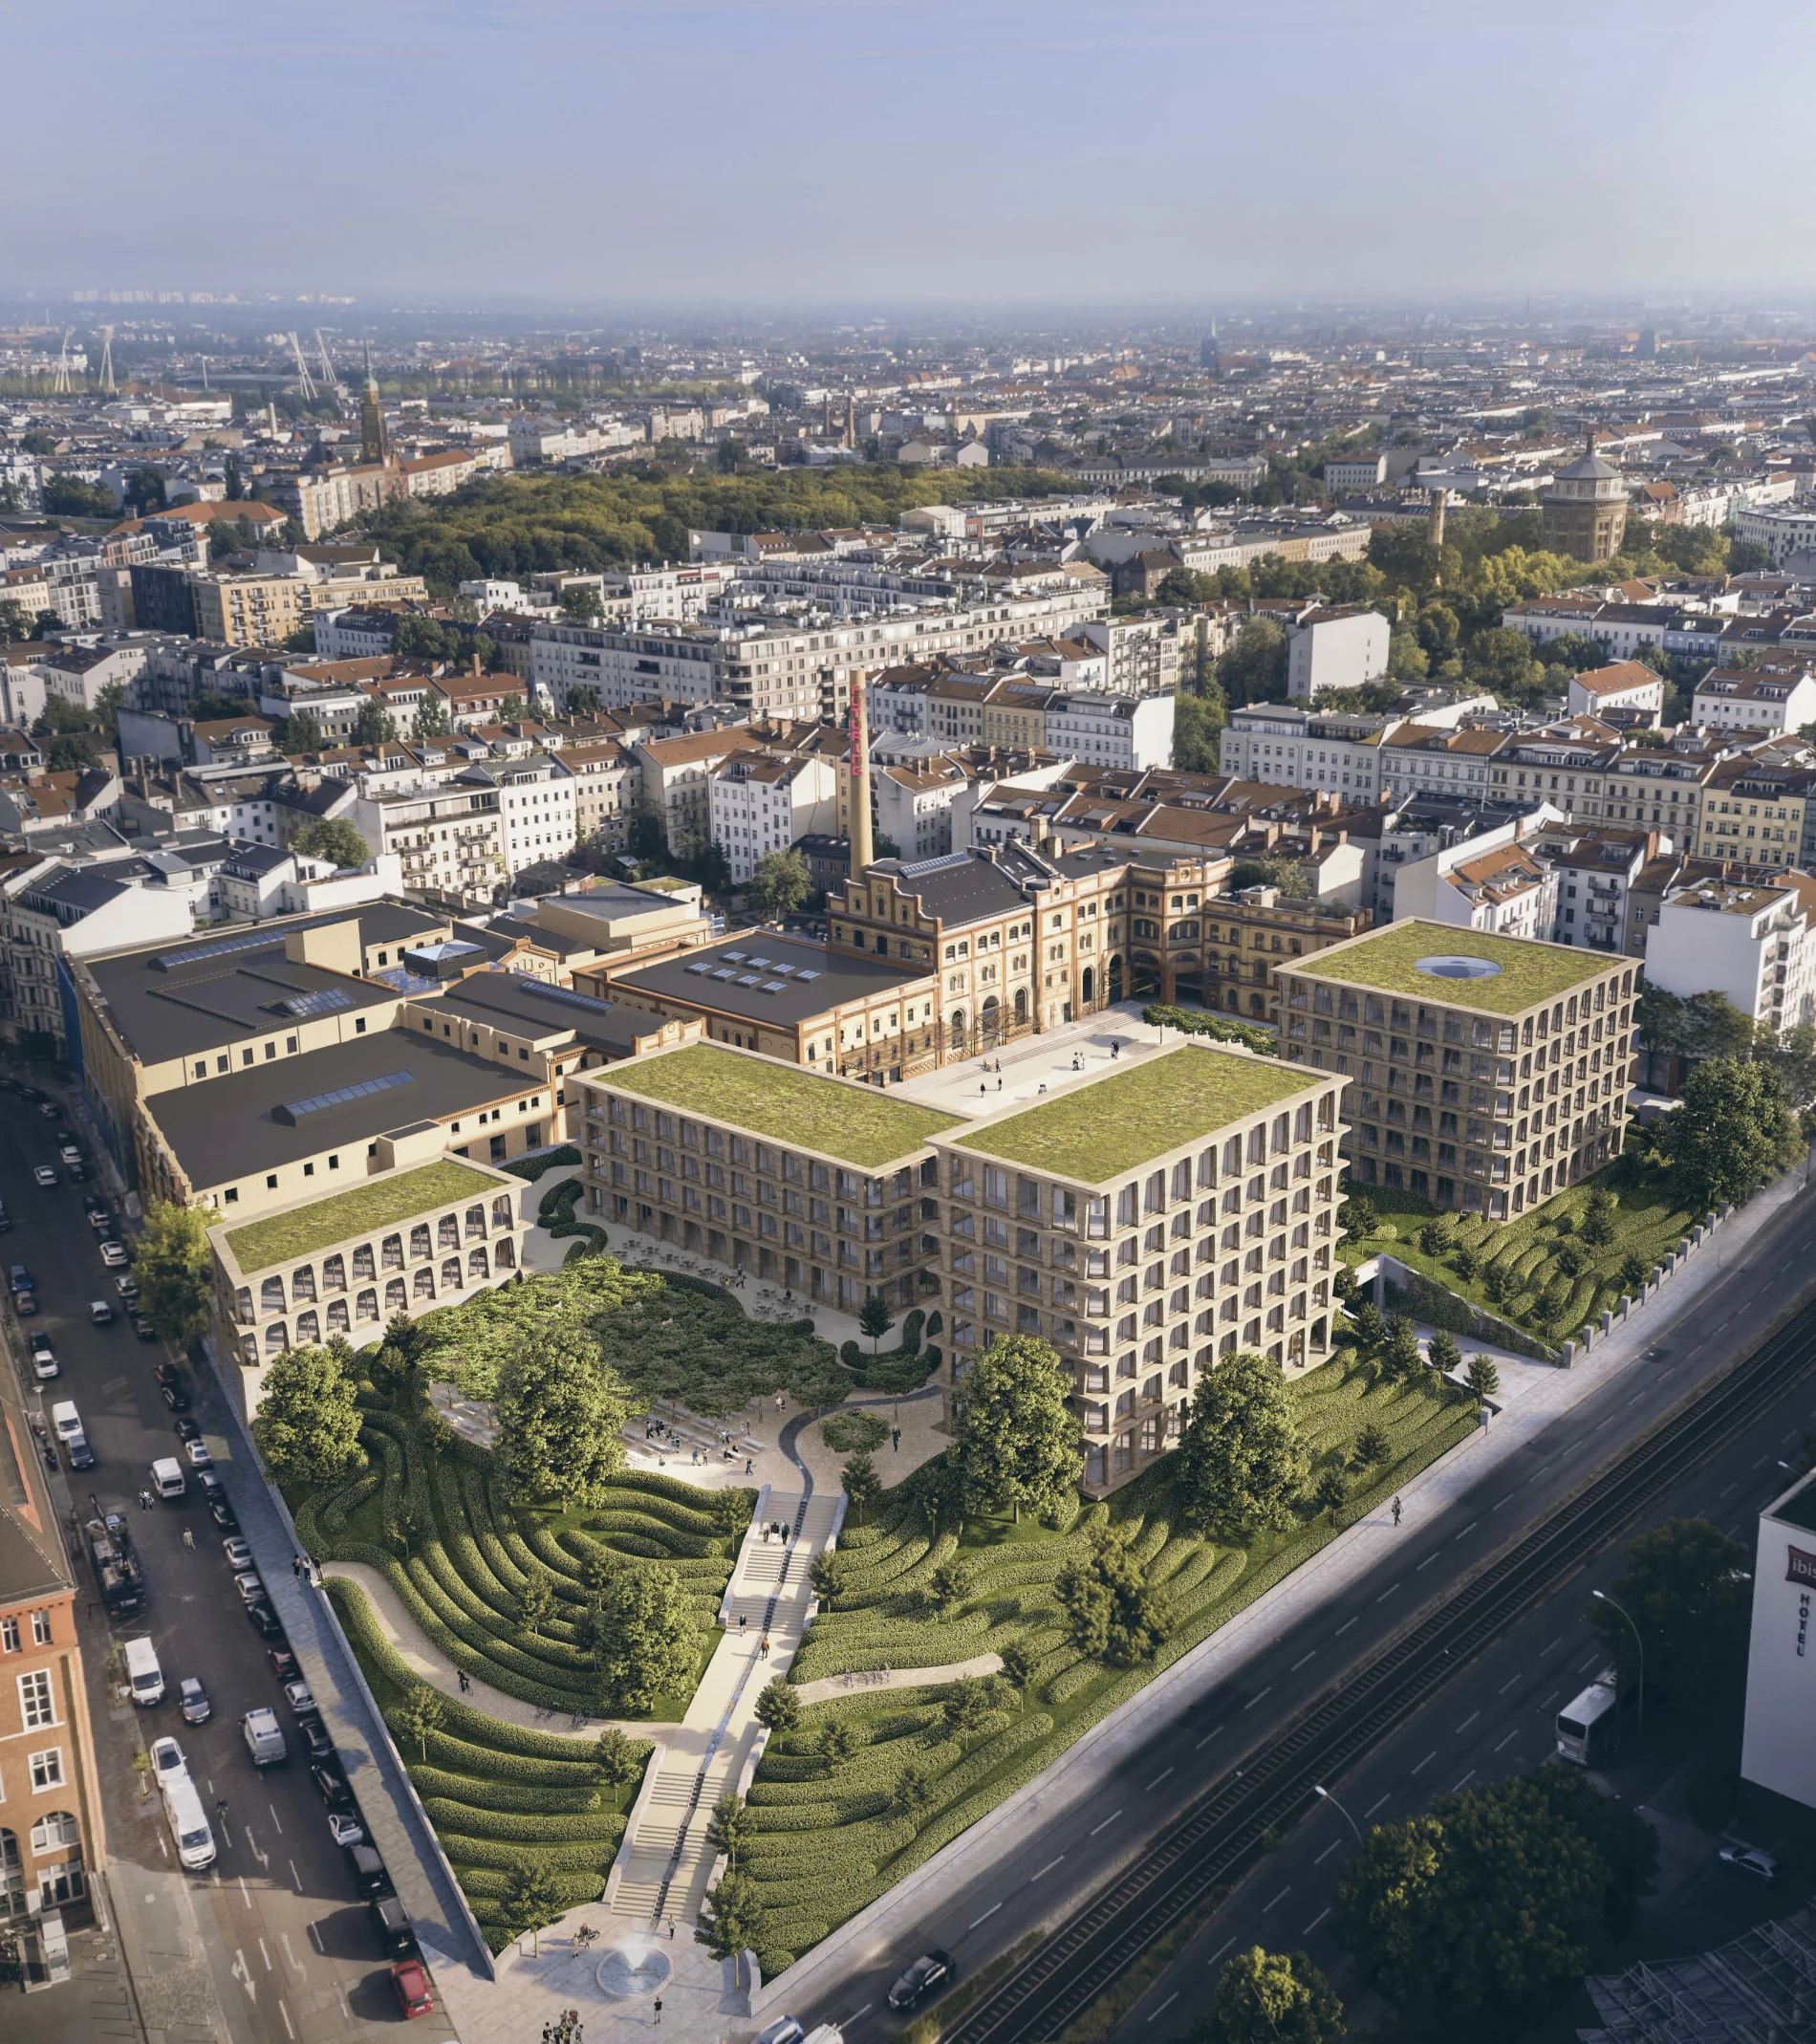 Auf dem großen Areal von Bötzow Berlin wird Zukunft aktiv gestaltet.
